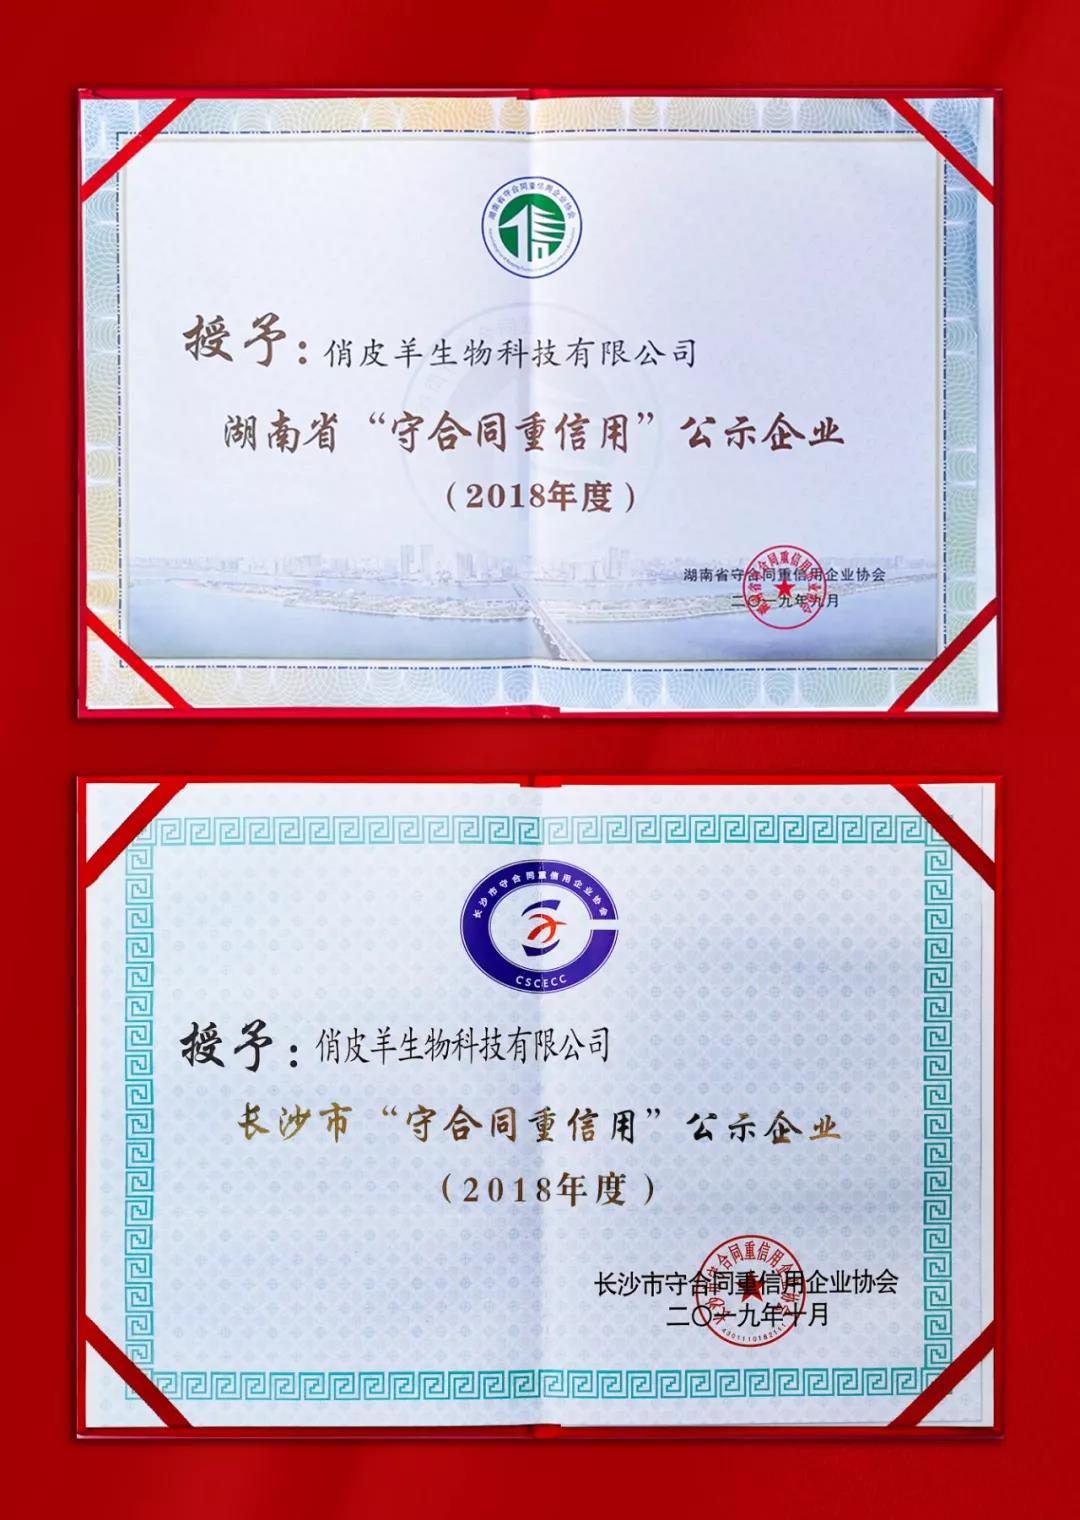 喜讯|俏皮羊生物科技有限公司被评为2018年度湖南省“守合同重信用”公示企业!